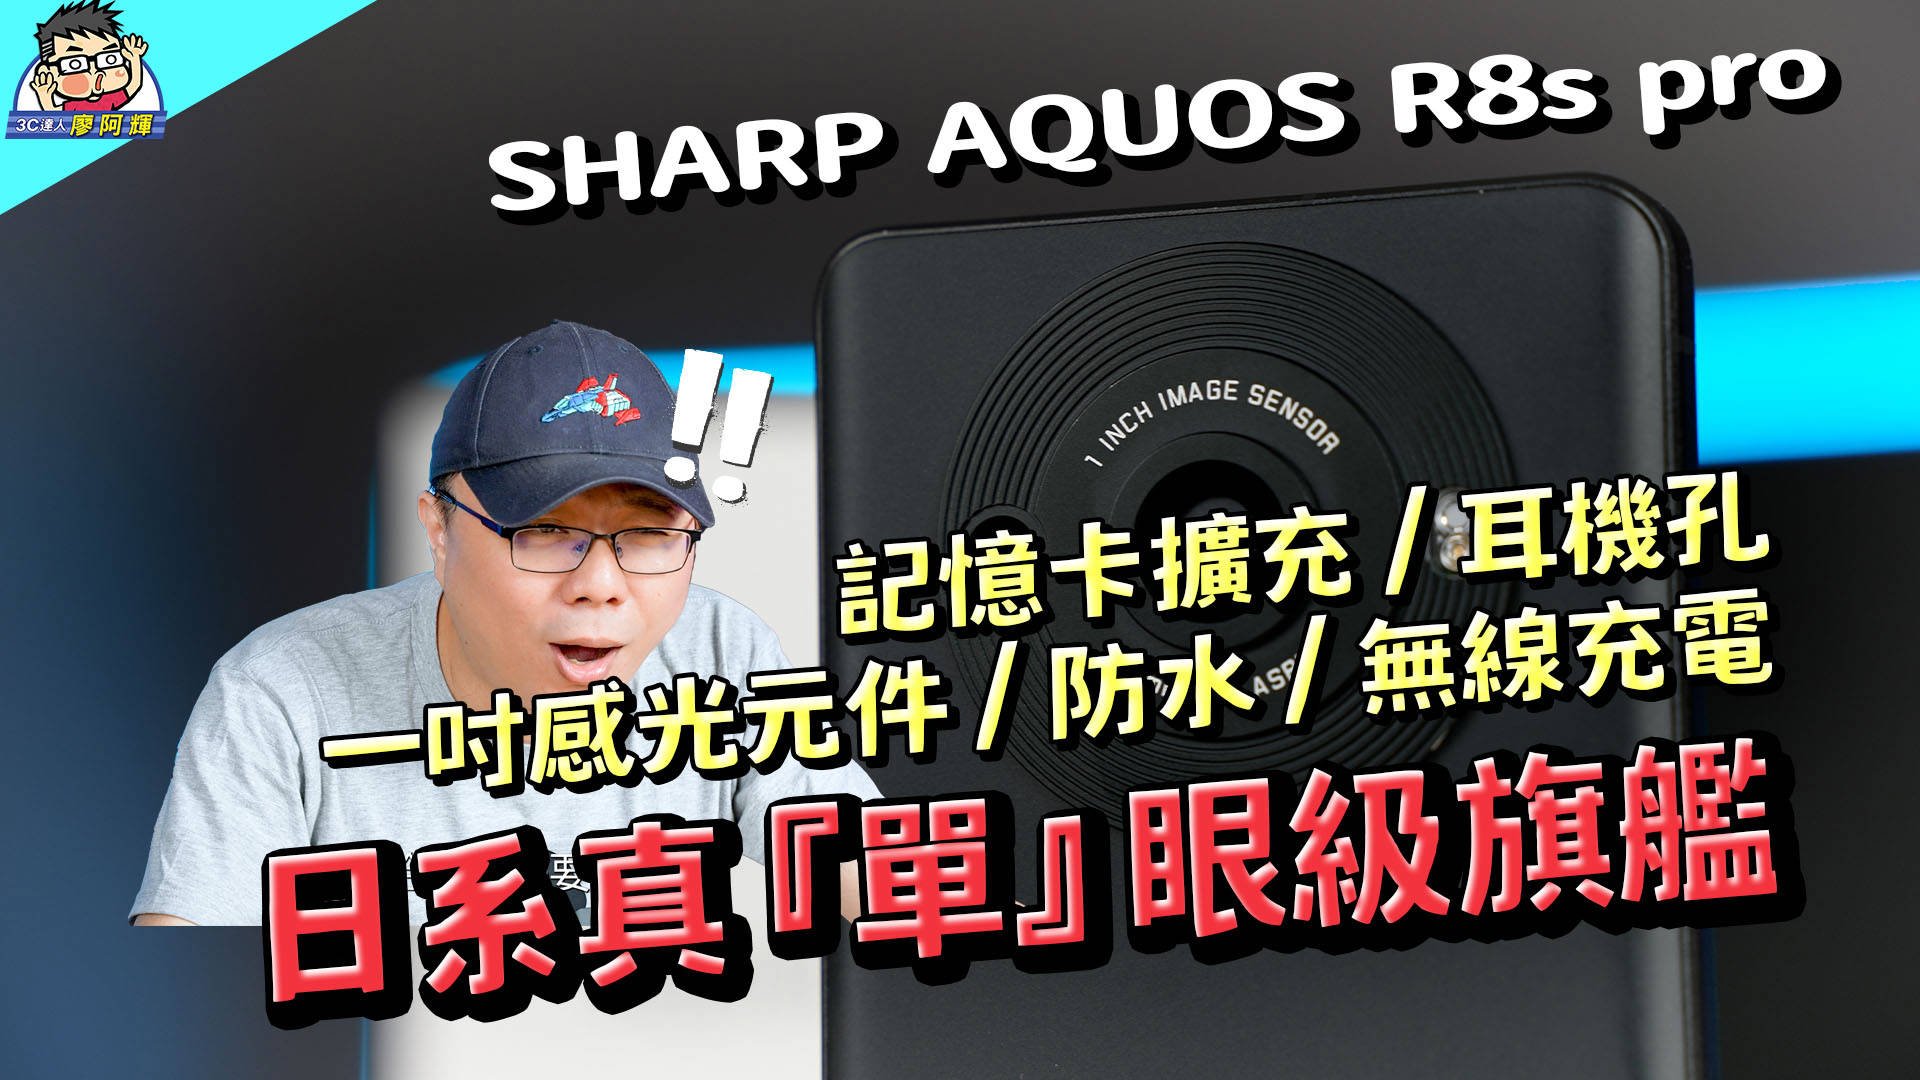 [影片] 最強單鏡頭 SHARP AQUOS R8s pro 日系風味旗艦機開箱 / 性能電力實測 / 相機實拍 / 選購建議 @3C 達人廖阿輝